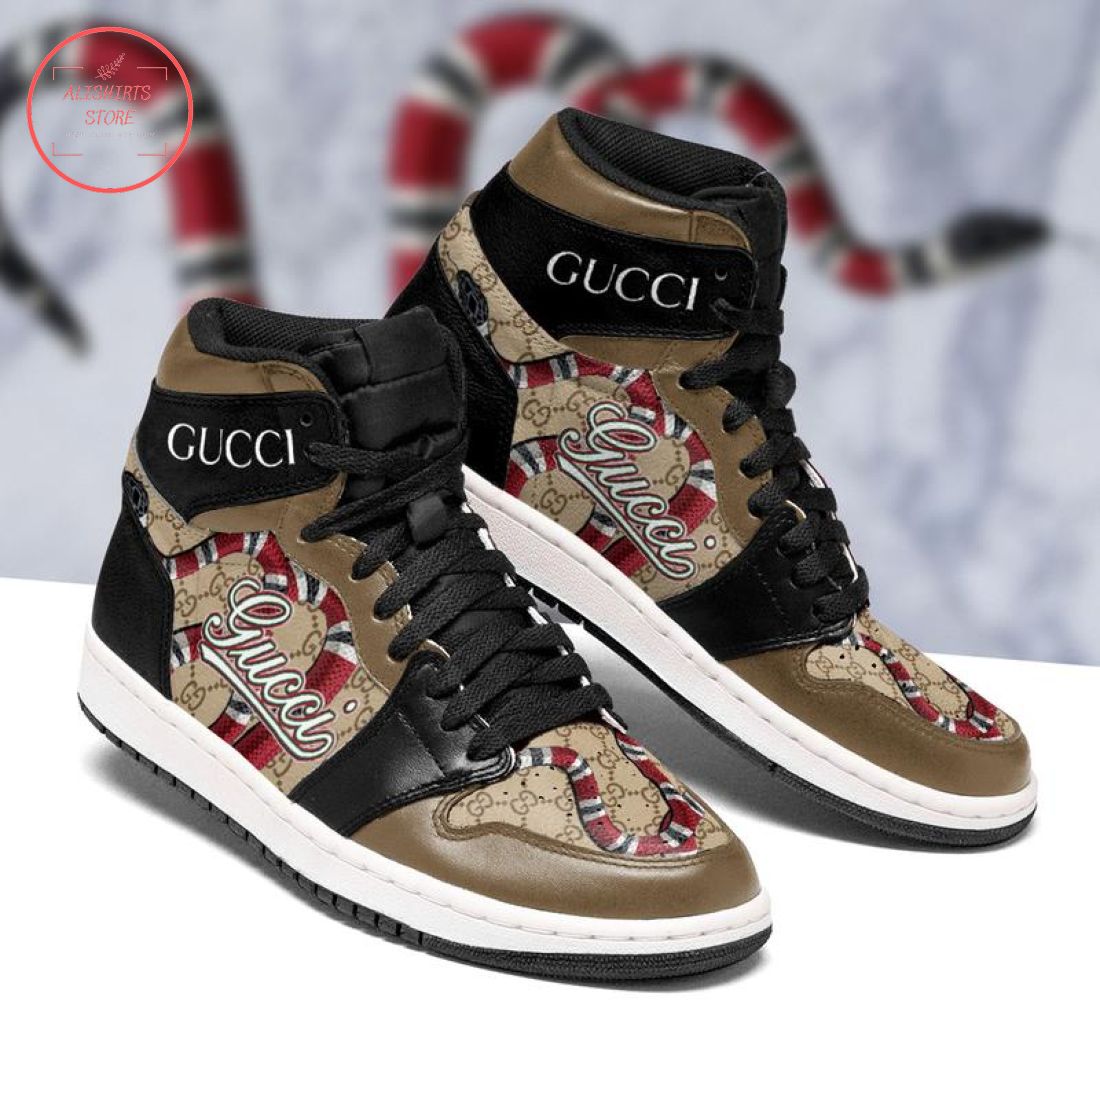 Gucci Snake Brown High Air Jordan 1 Sneakers